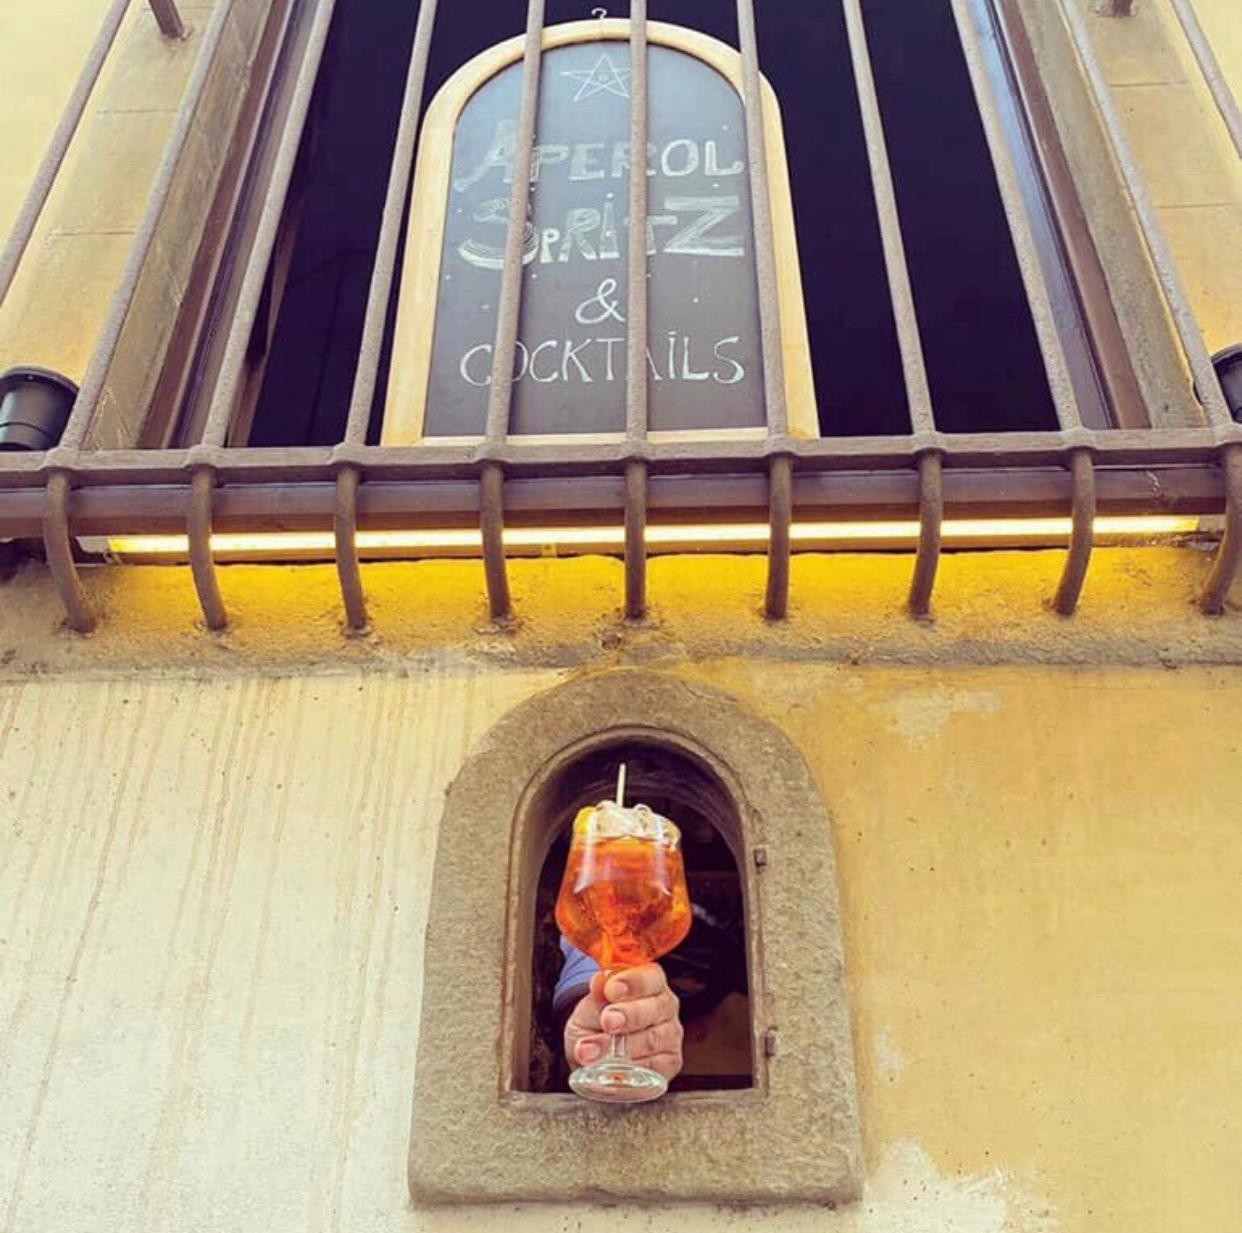 Portinhas medievais estão sendo usadas novamente, revivendo uma tradição Italiana da época da peste  (Foto: Reprodução/Instagram)